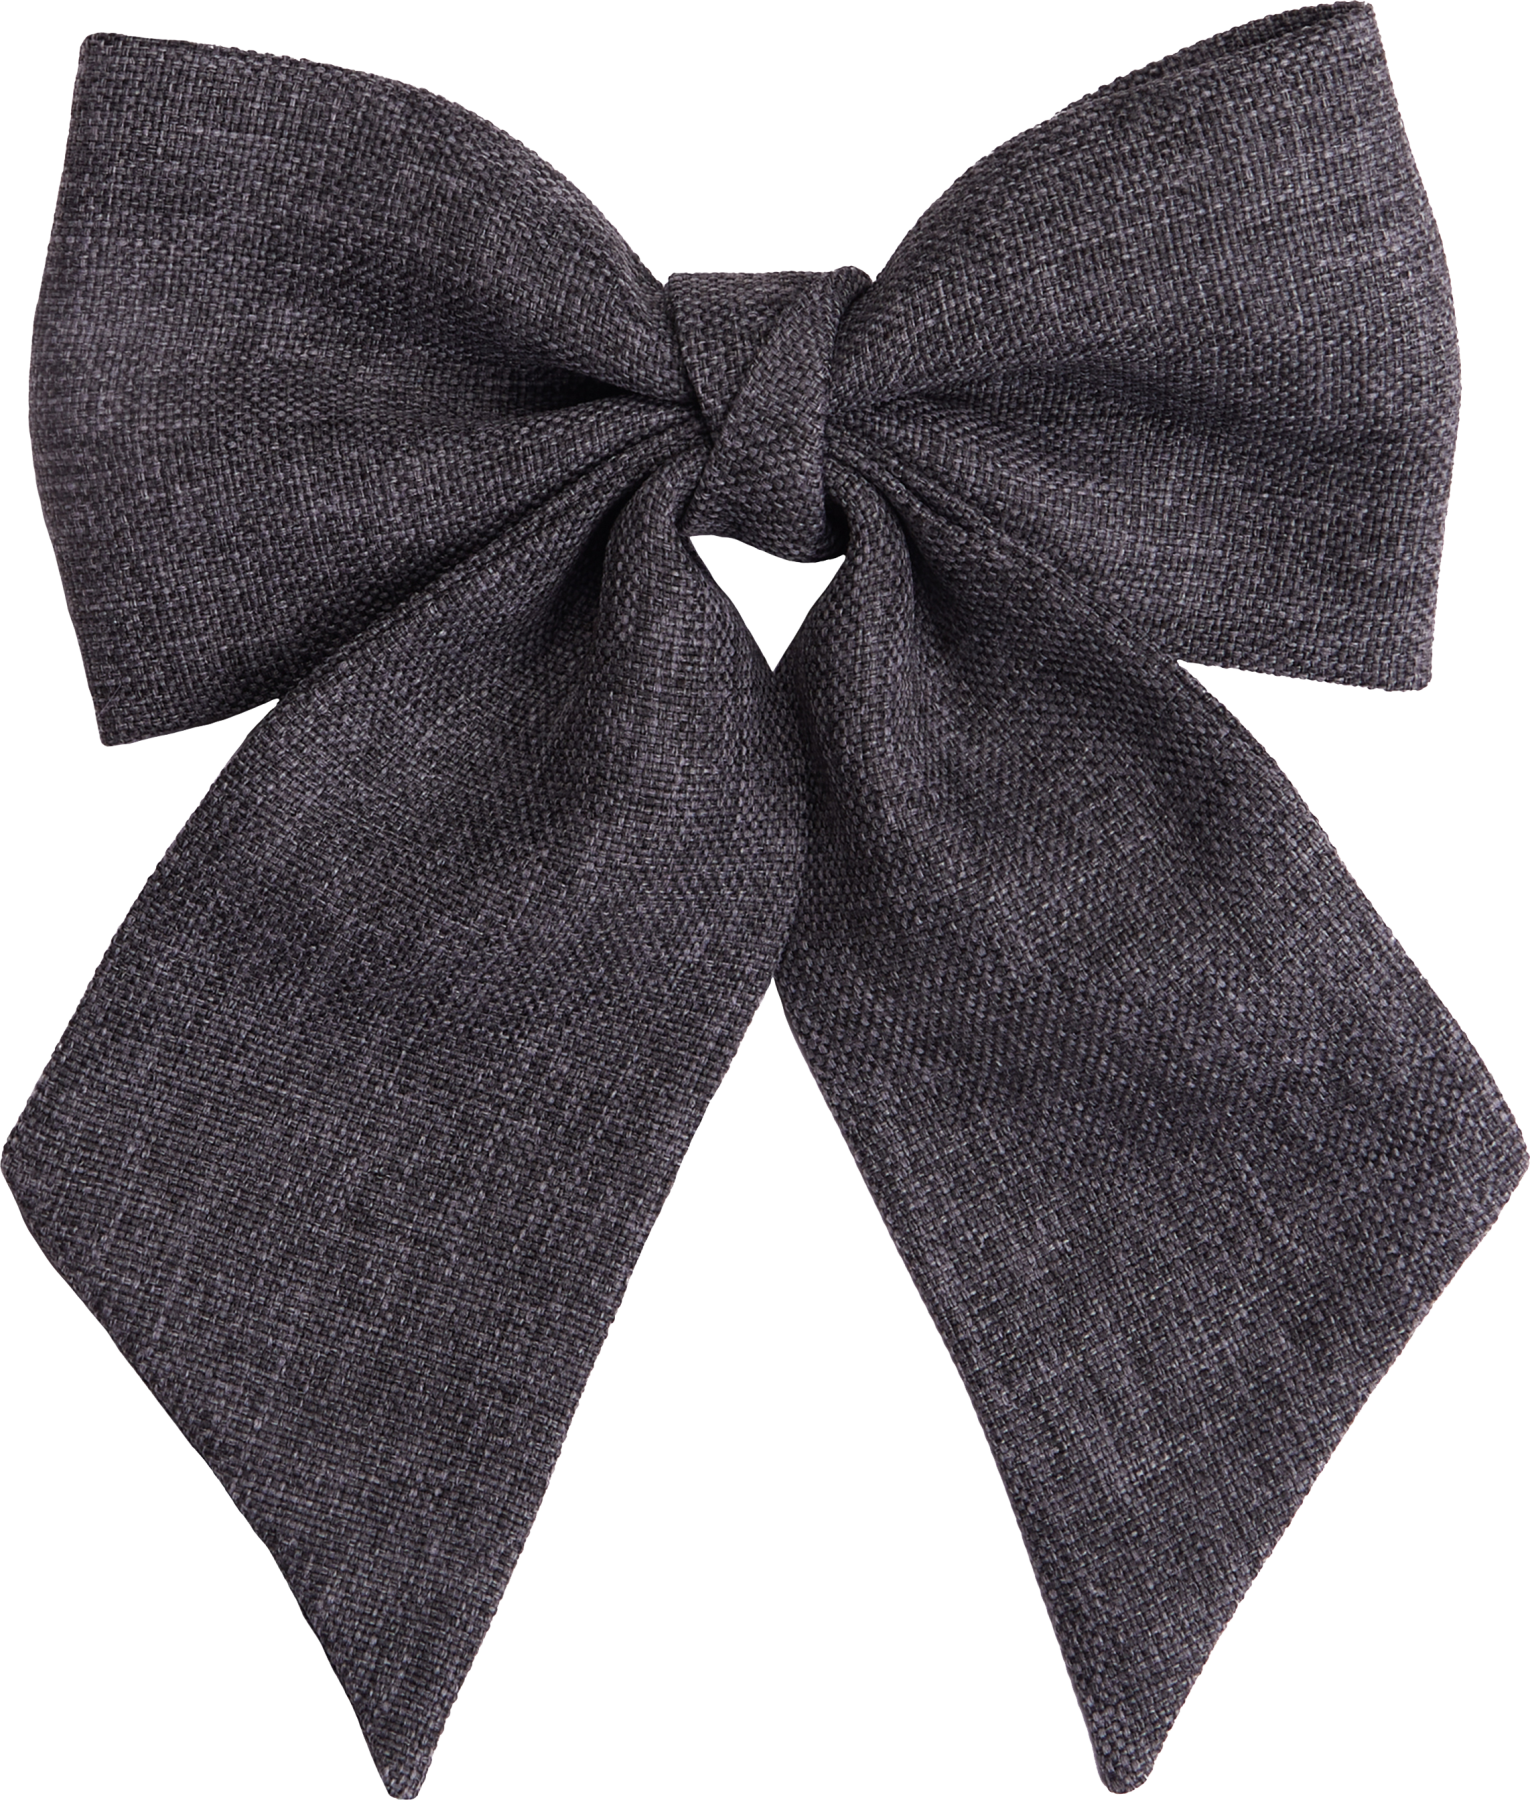 Dark gray hessian fabric bow